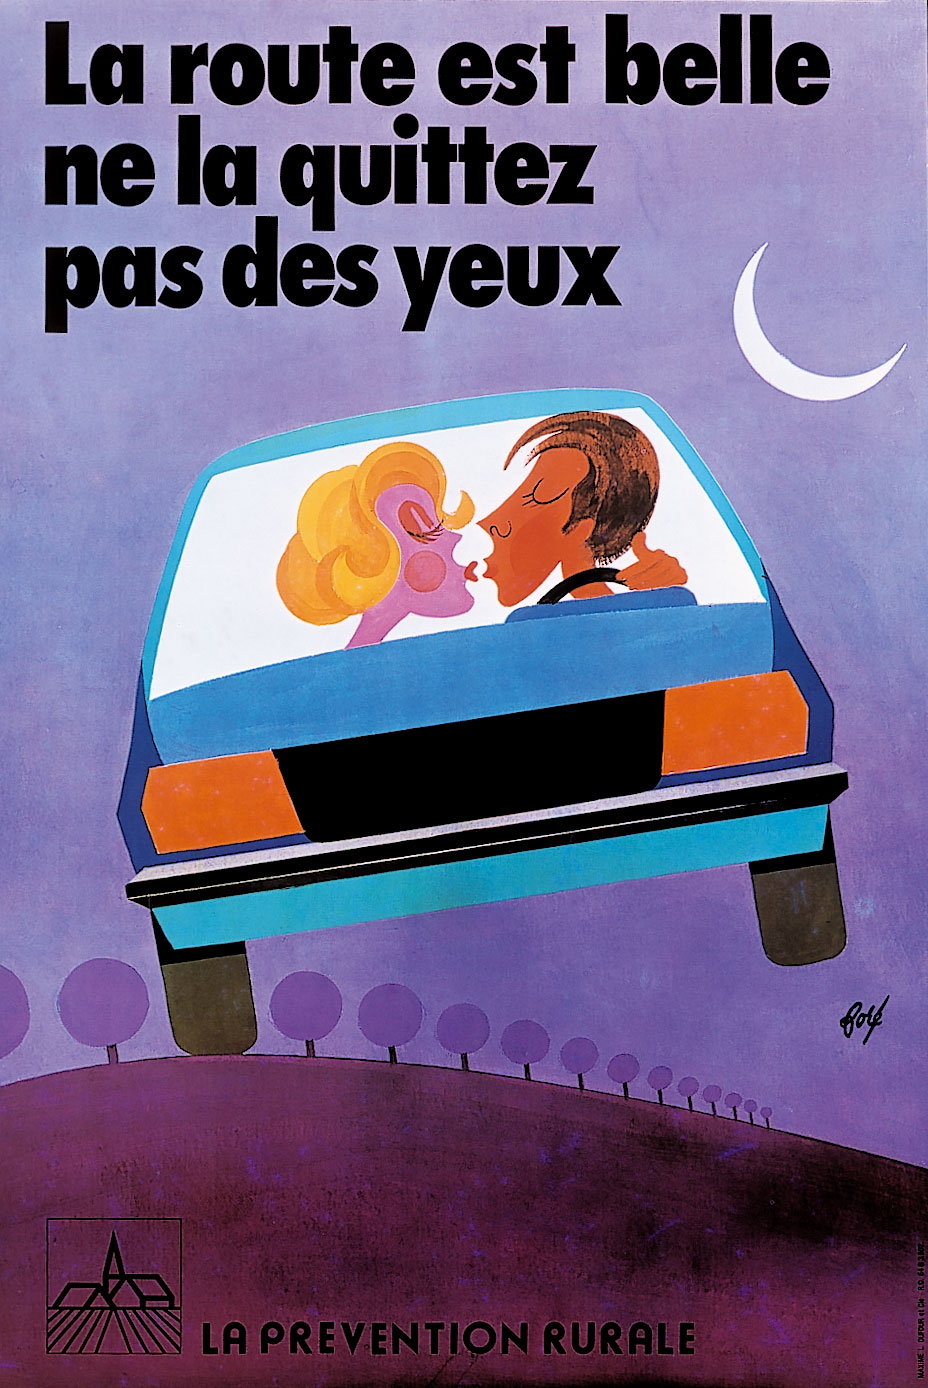 Affiche pour la prévention rurale “La route est belle, ne la quittez pas des yeux”, 1977.